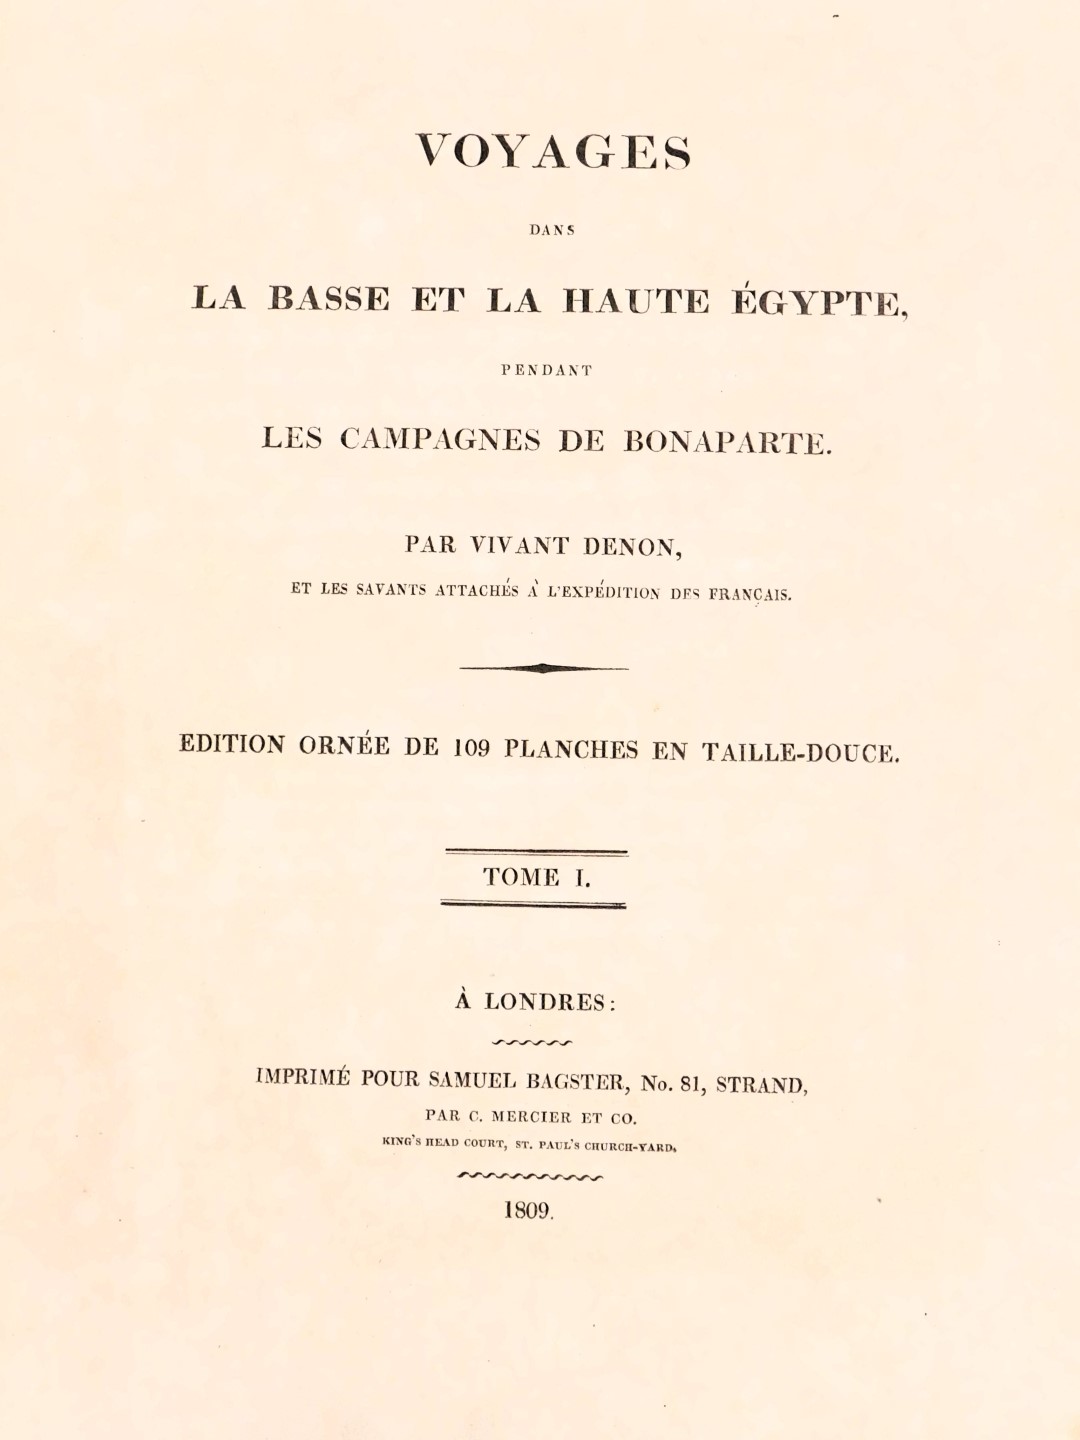 Londres (A). Voyages Dans la Basse et la Haute Egypte, 1809 bound edition. (AF) - Image 2 of 3